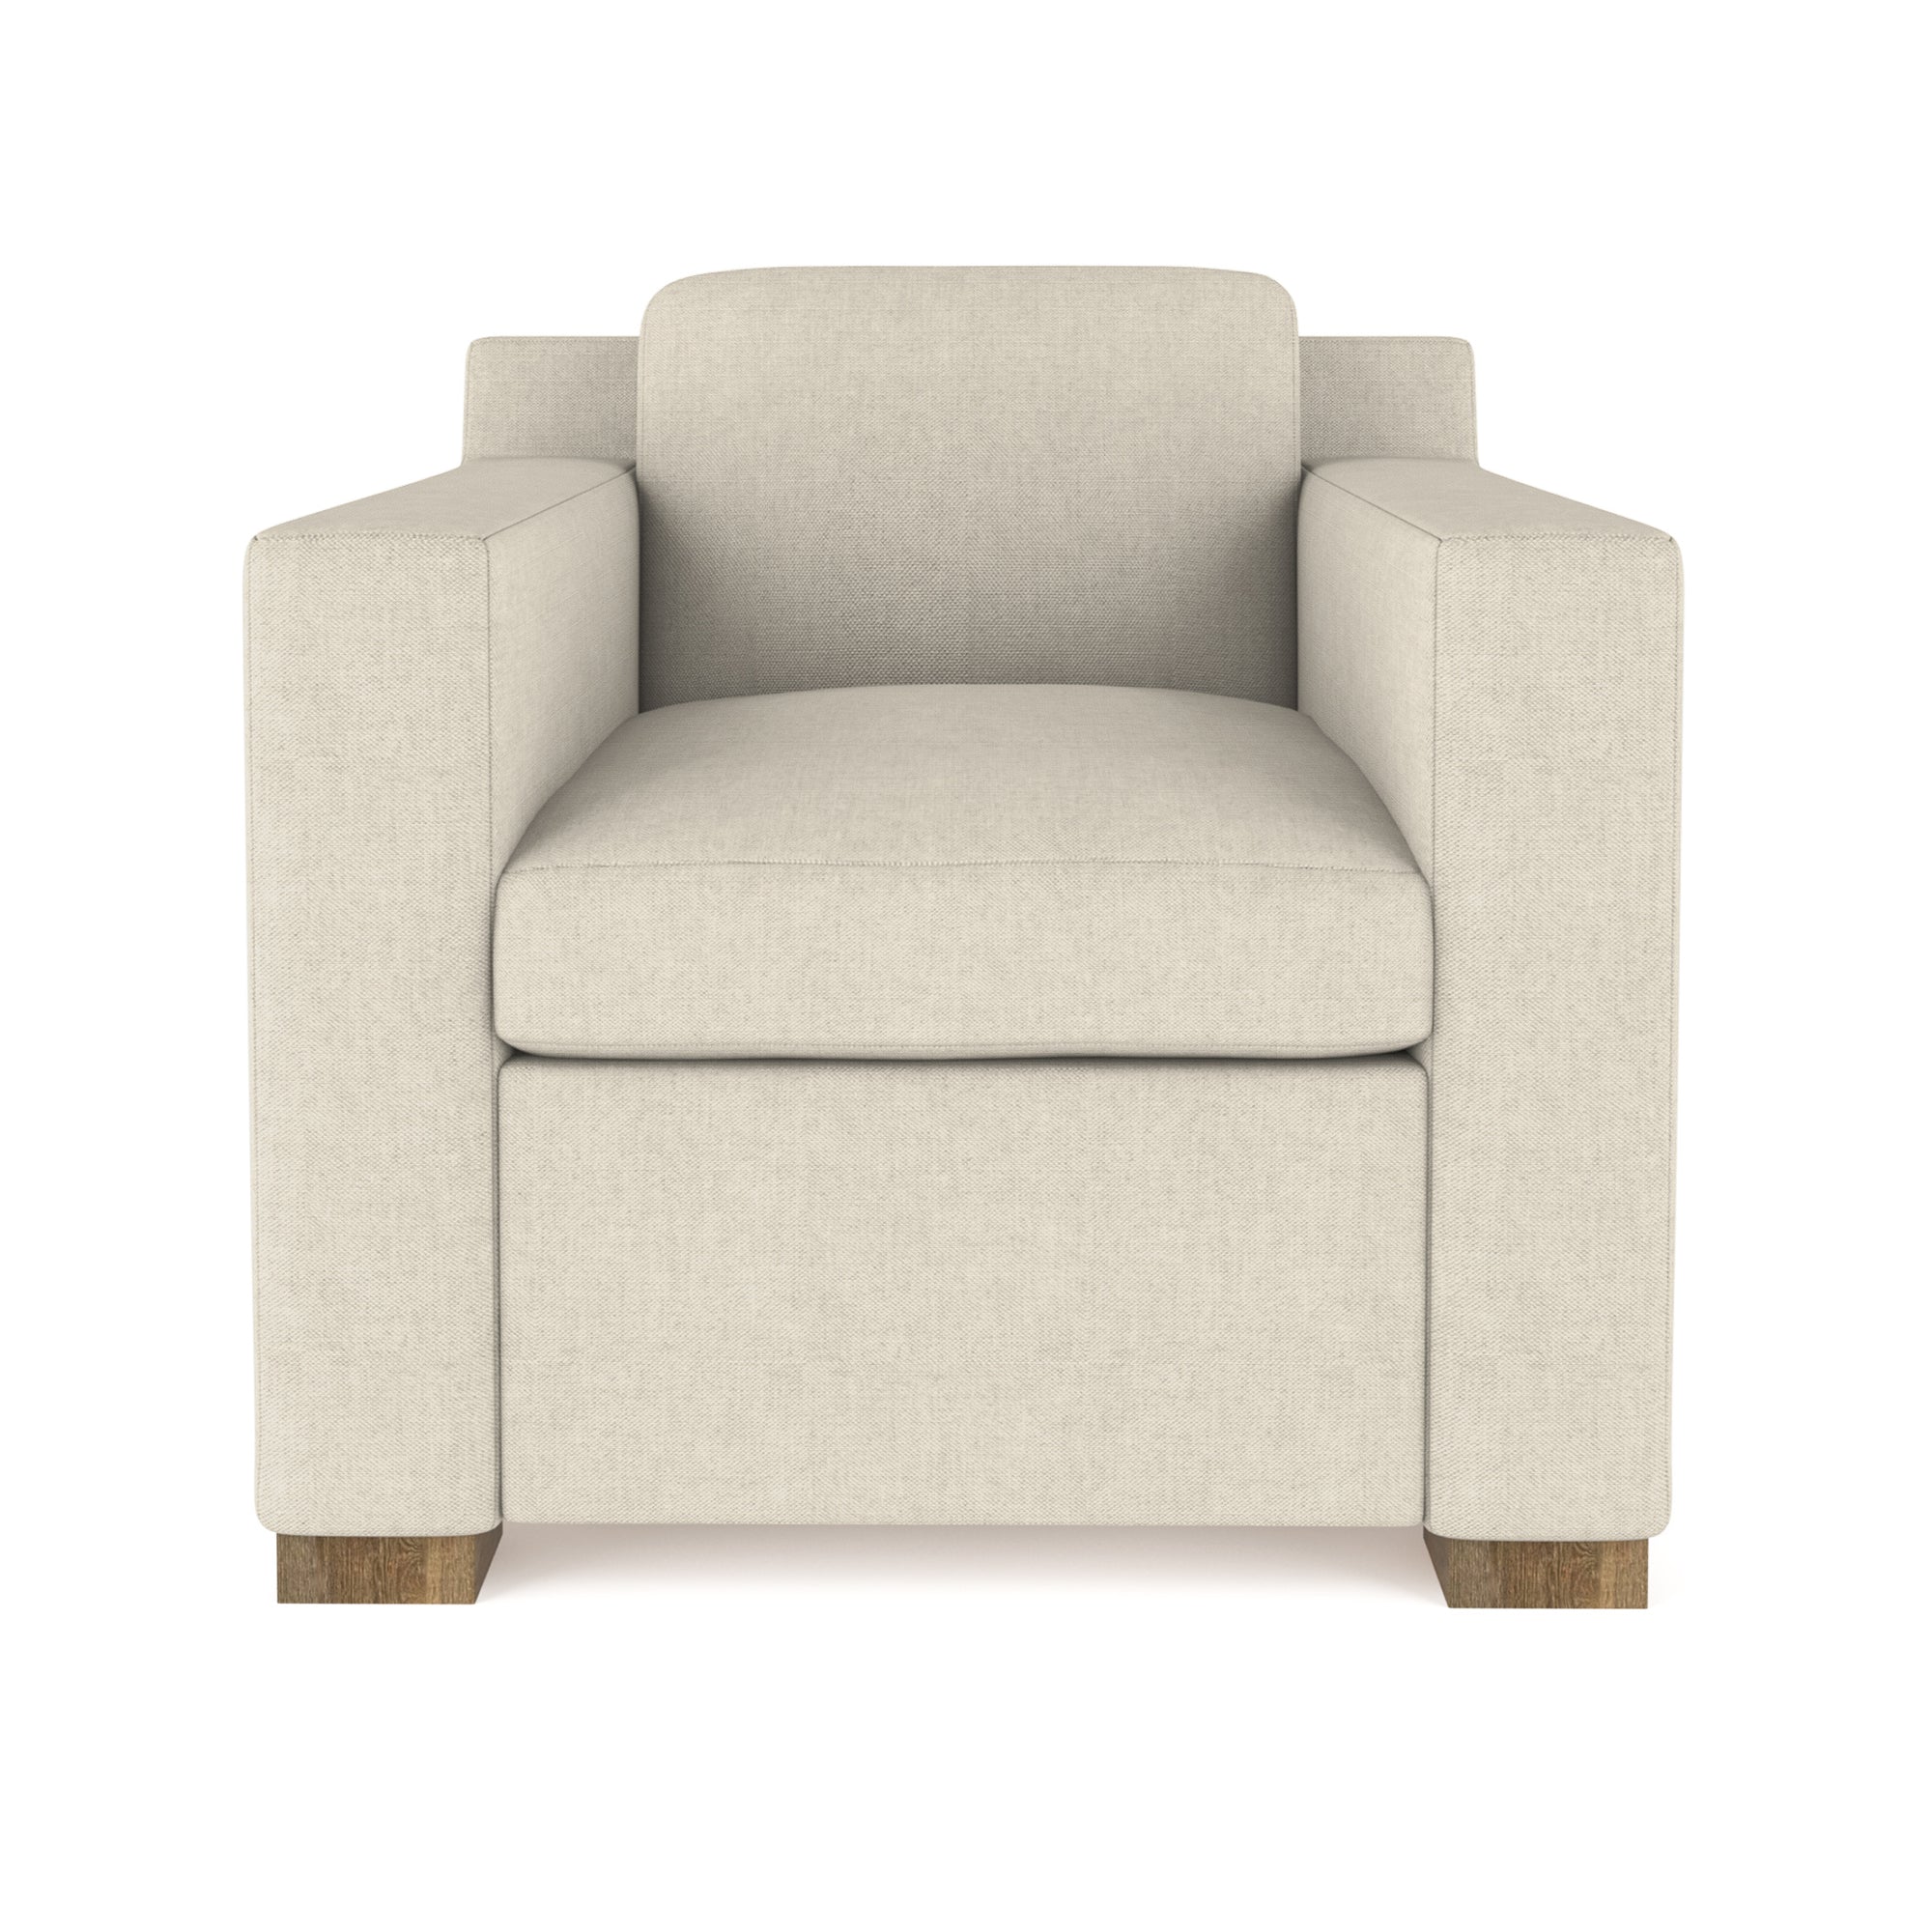 Mercer Chair - Oyster Box Weave Linen